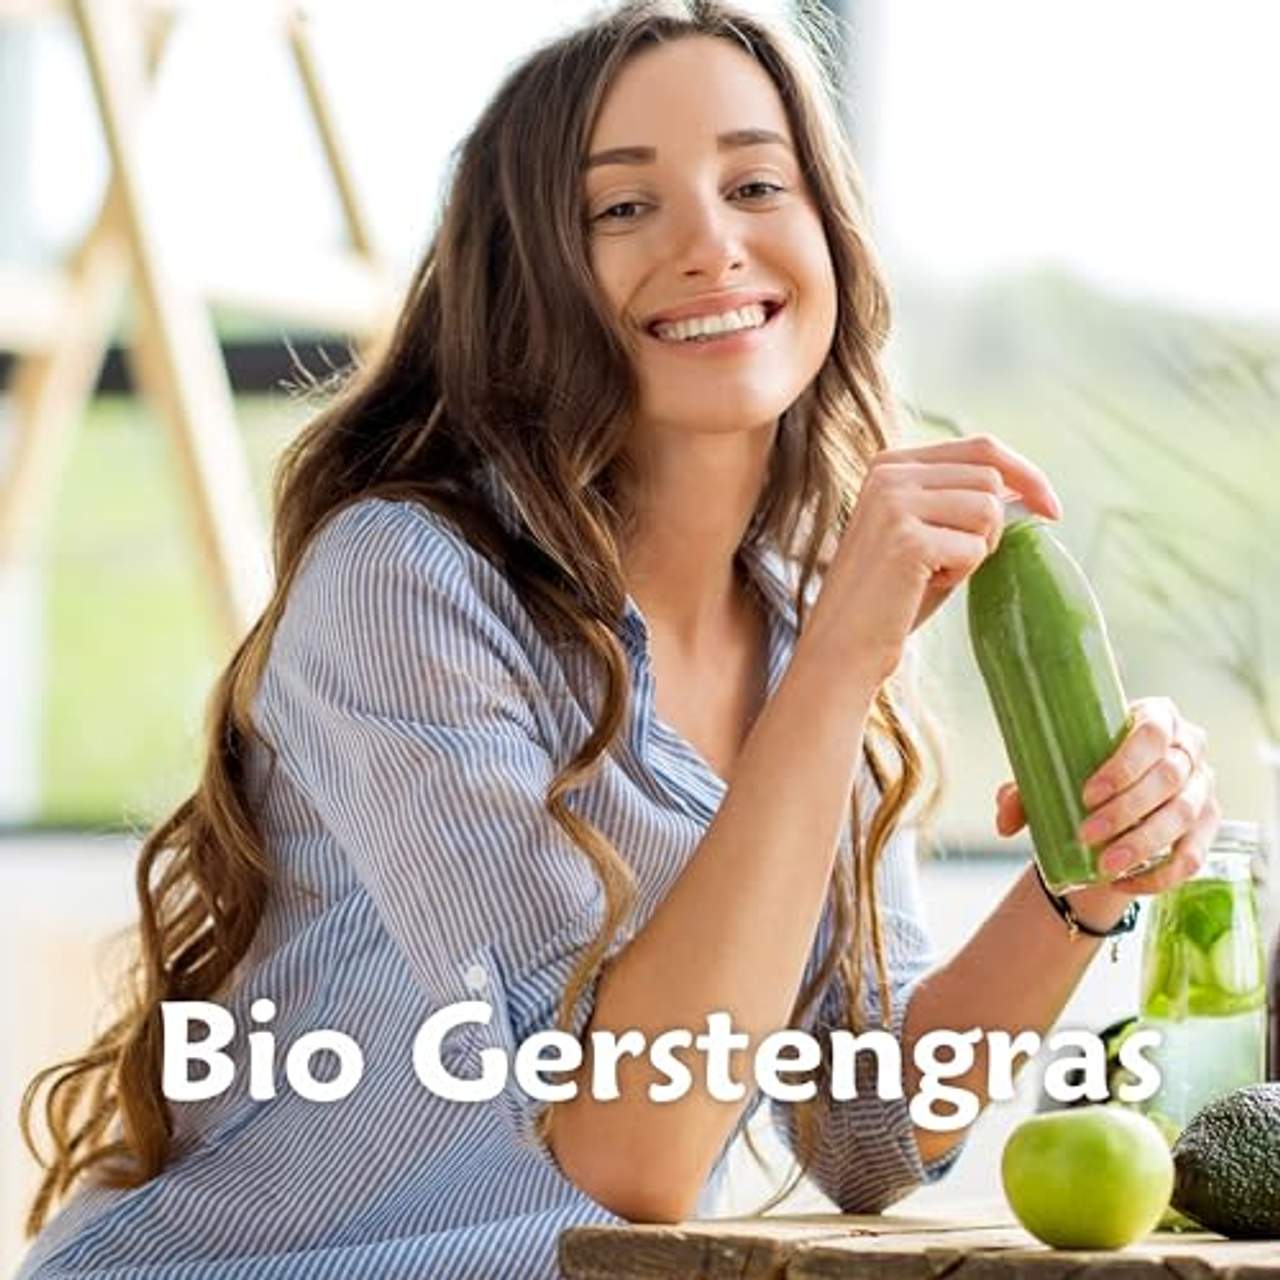 Superkost BIO Gerstengras Pulver Biologisch angebaut in Bayern